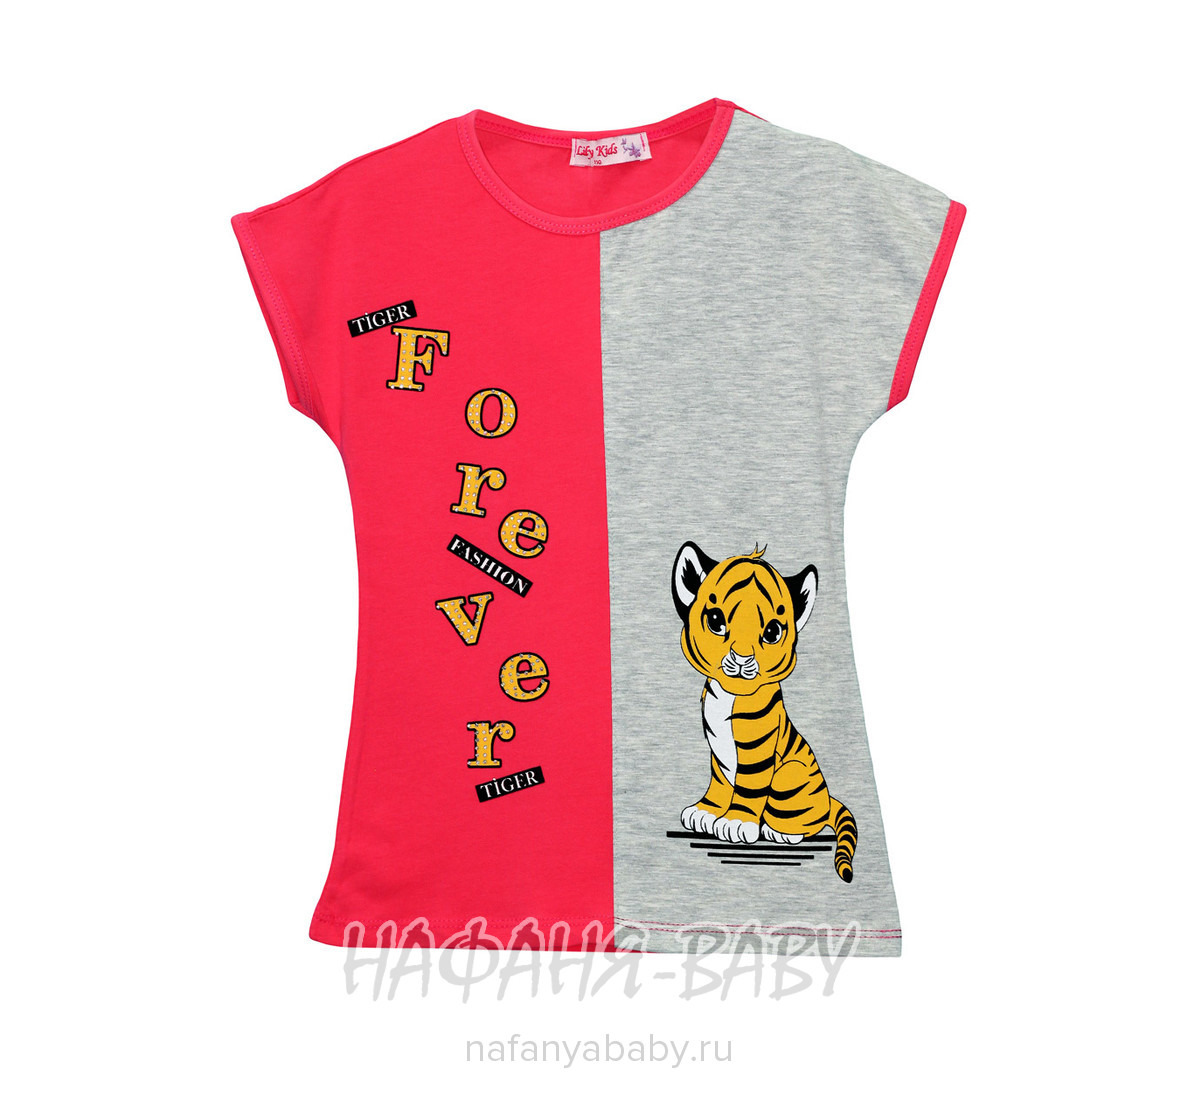 Детская футболка с принтом LILY Kids арт: 3611, 5-9 лет, цвет коралловый, оптом Турция